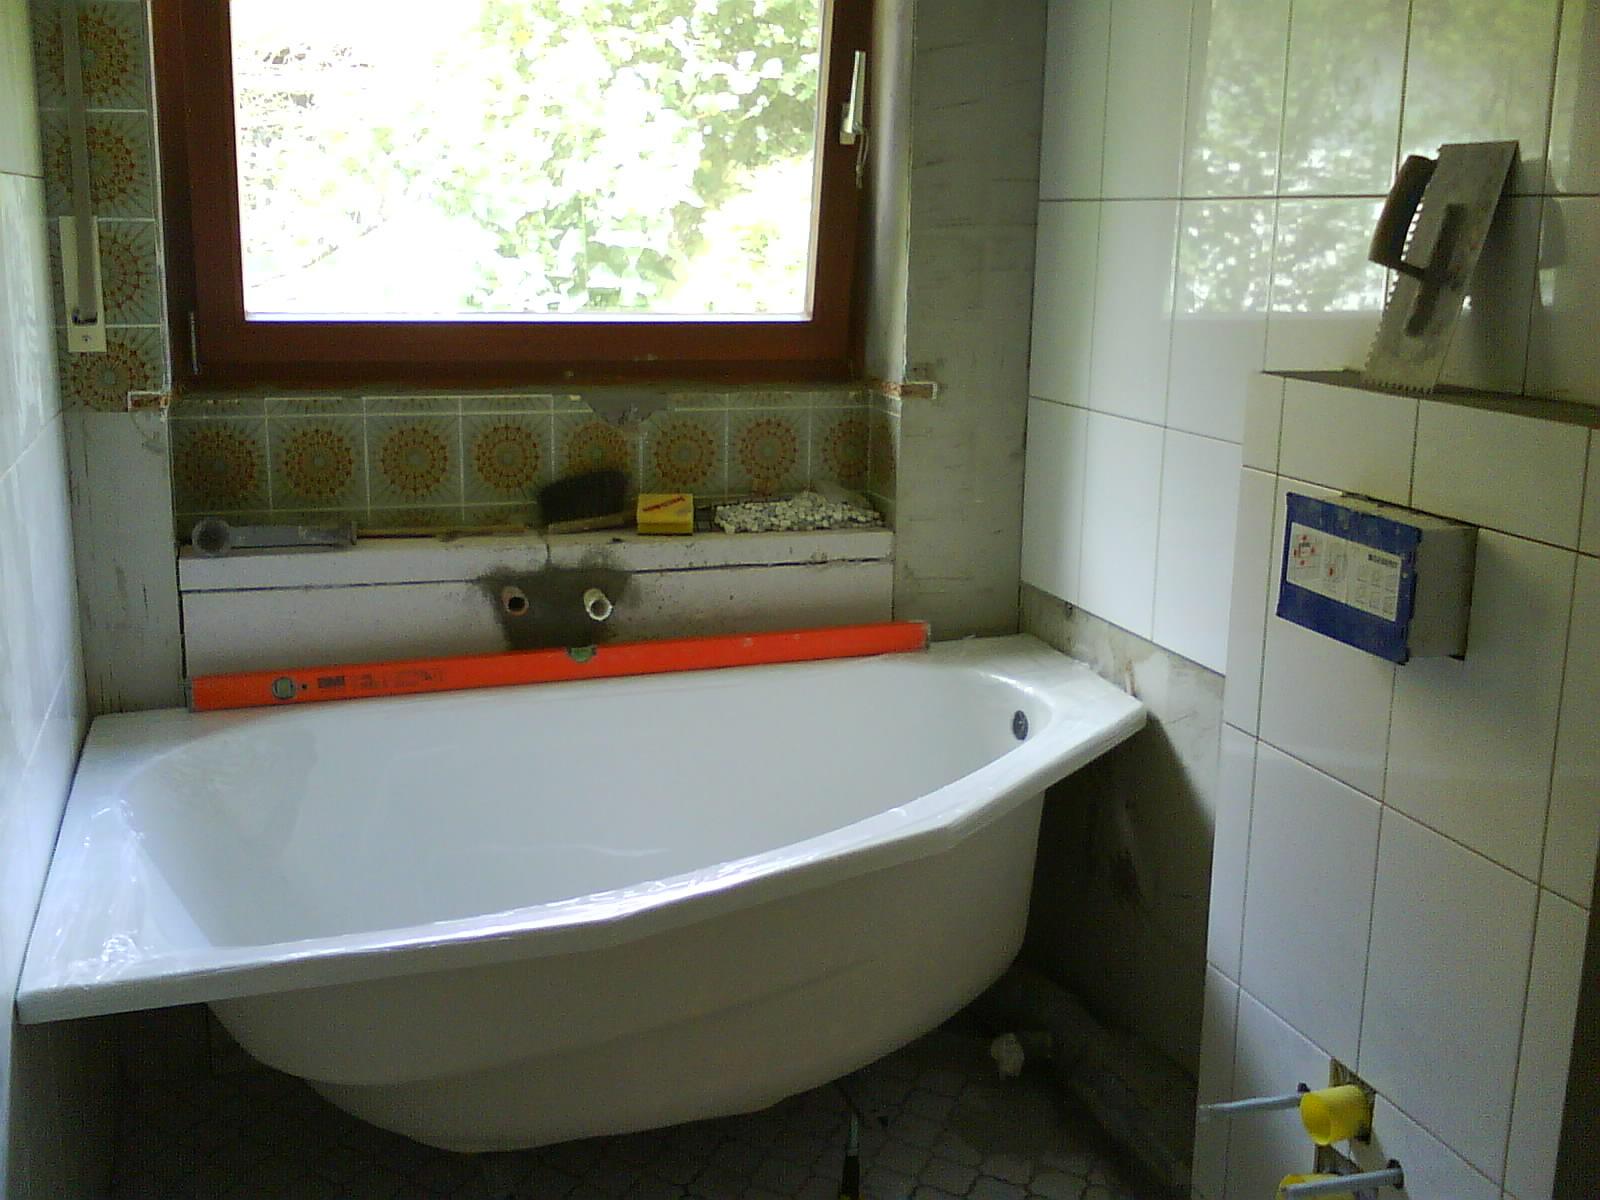 Bad Vorher / nachher #fliesen #badewanne #weißefliesen ©Dagmar Schwenzfeuer